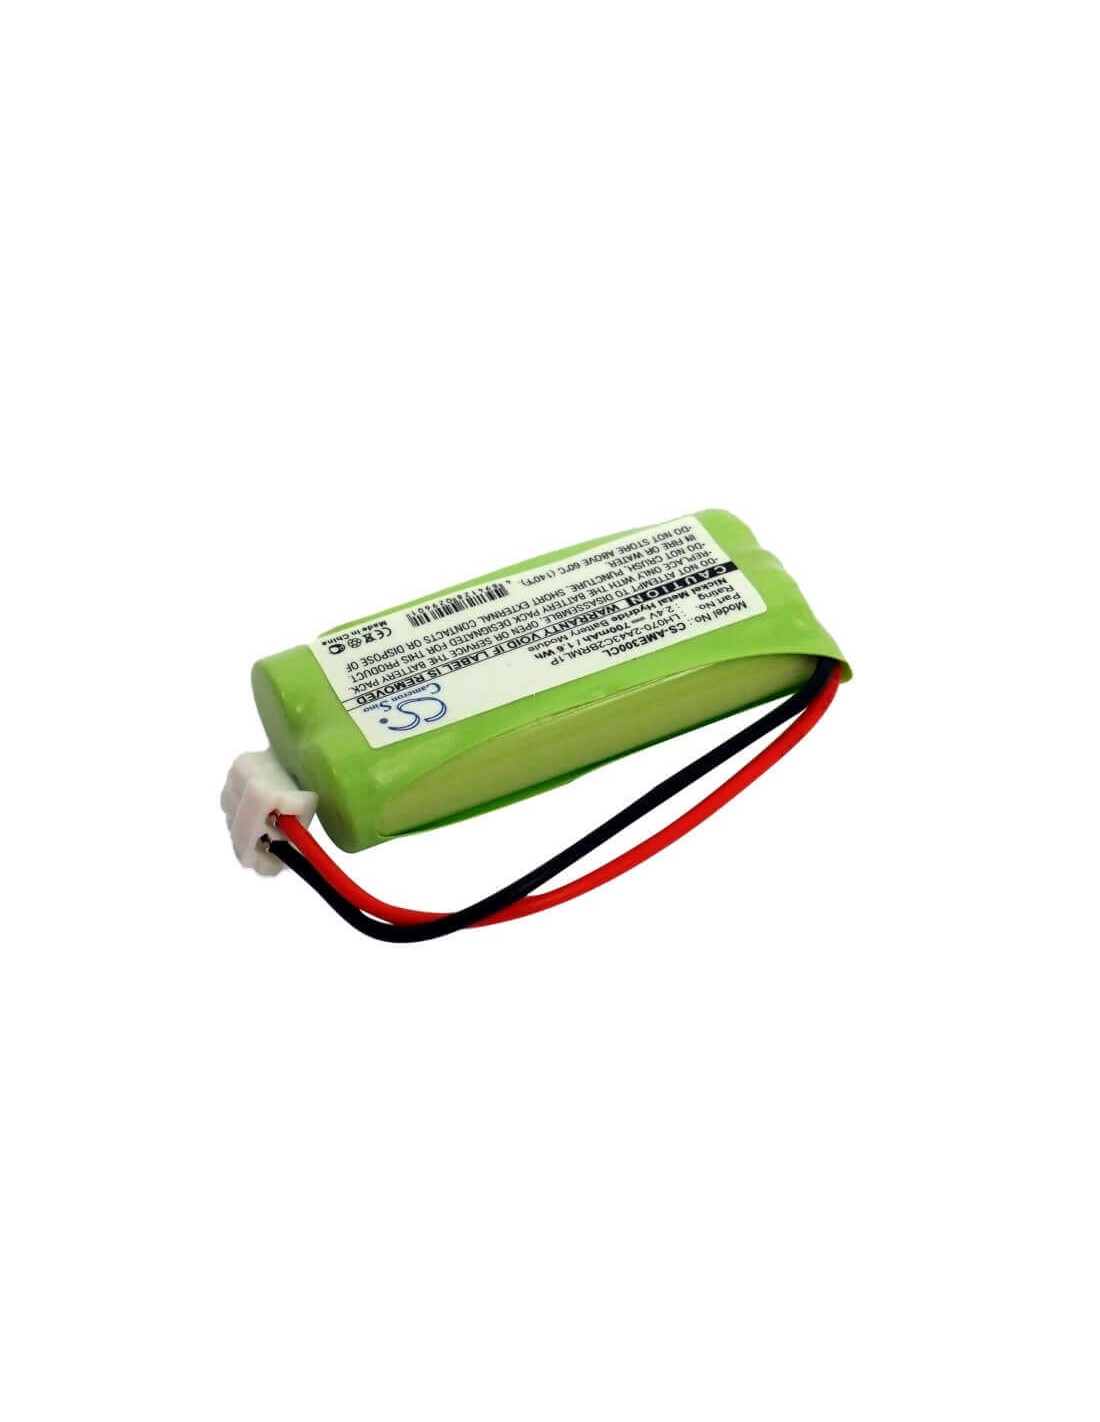 Battery for American, E30021cl, E30022cl, E30023cl, E30025cl, 2.4V, 700mAh - 1.68Wh